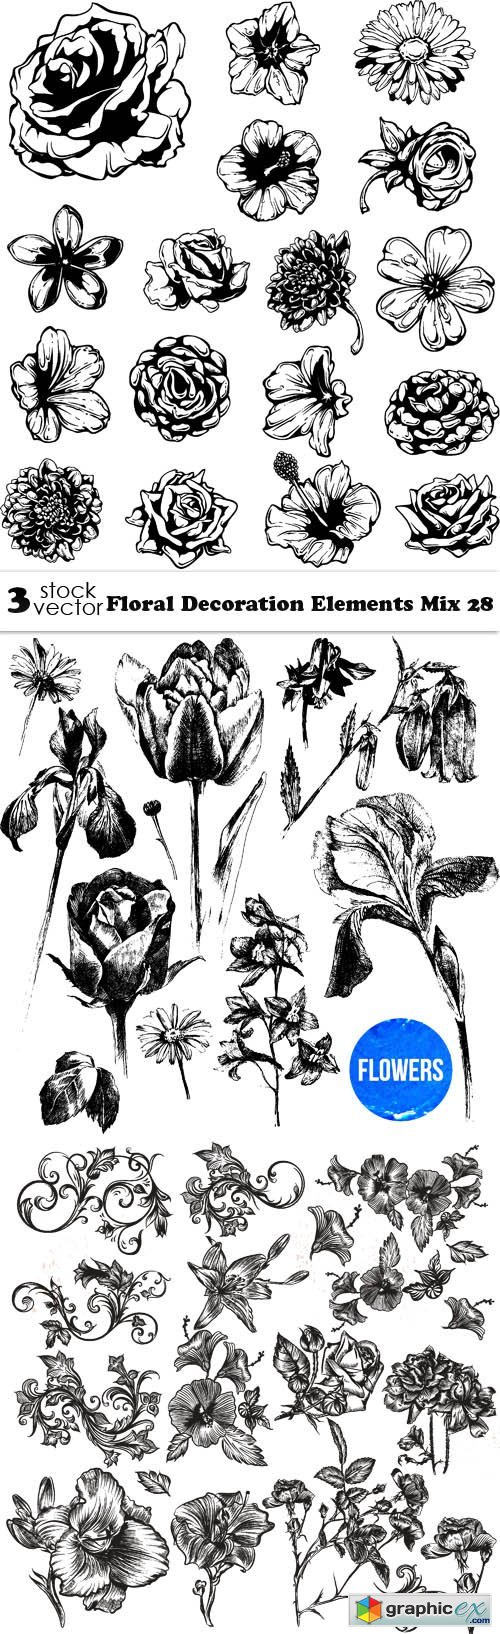 Floral Decoration Elements Mix 28